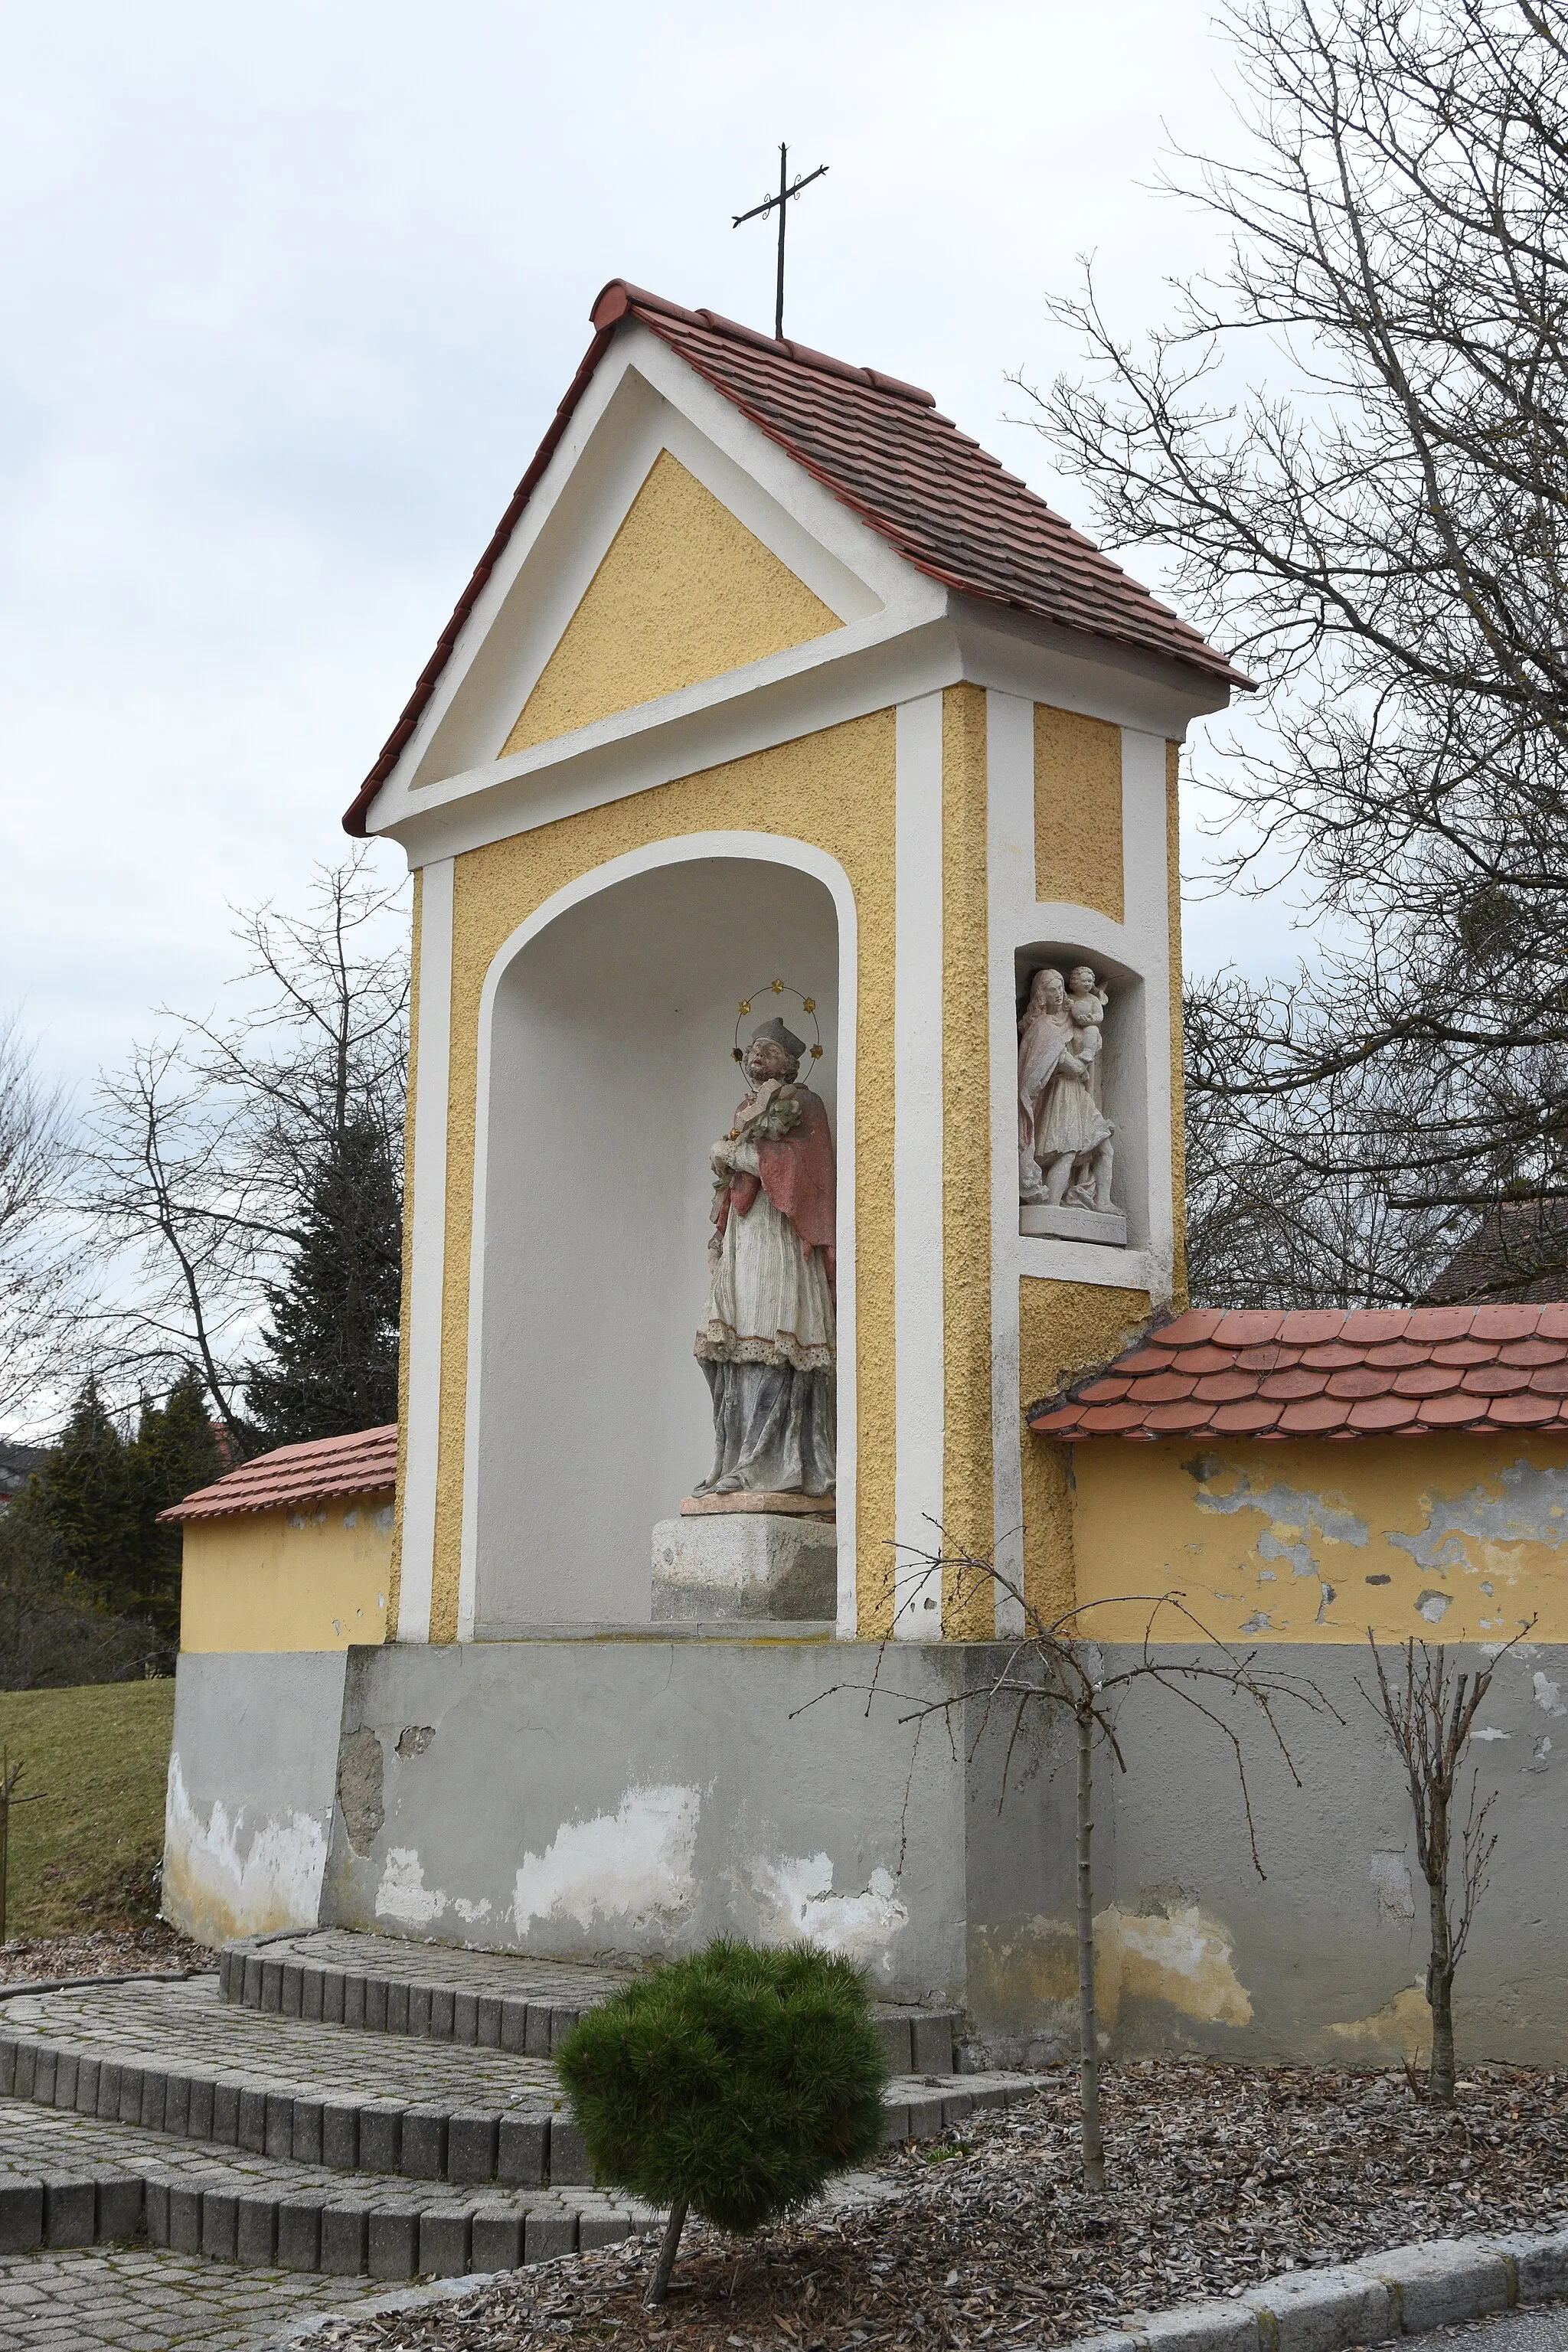 Obrázek Steiermark